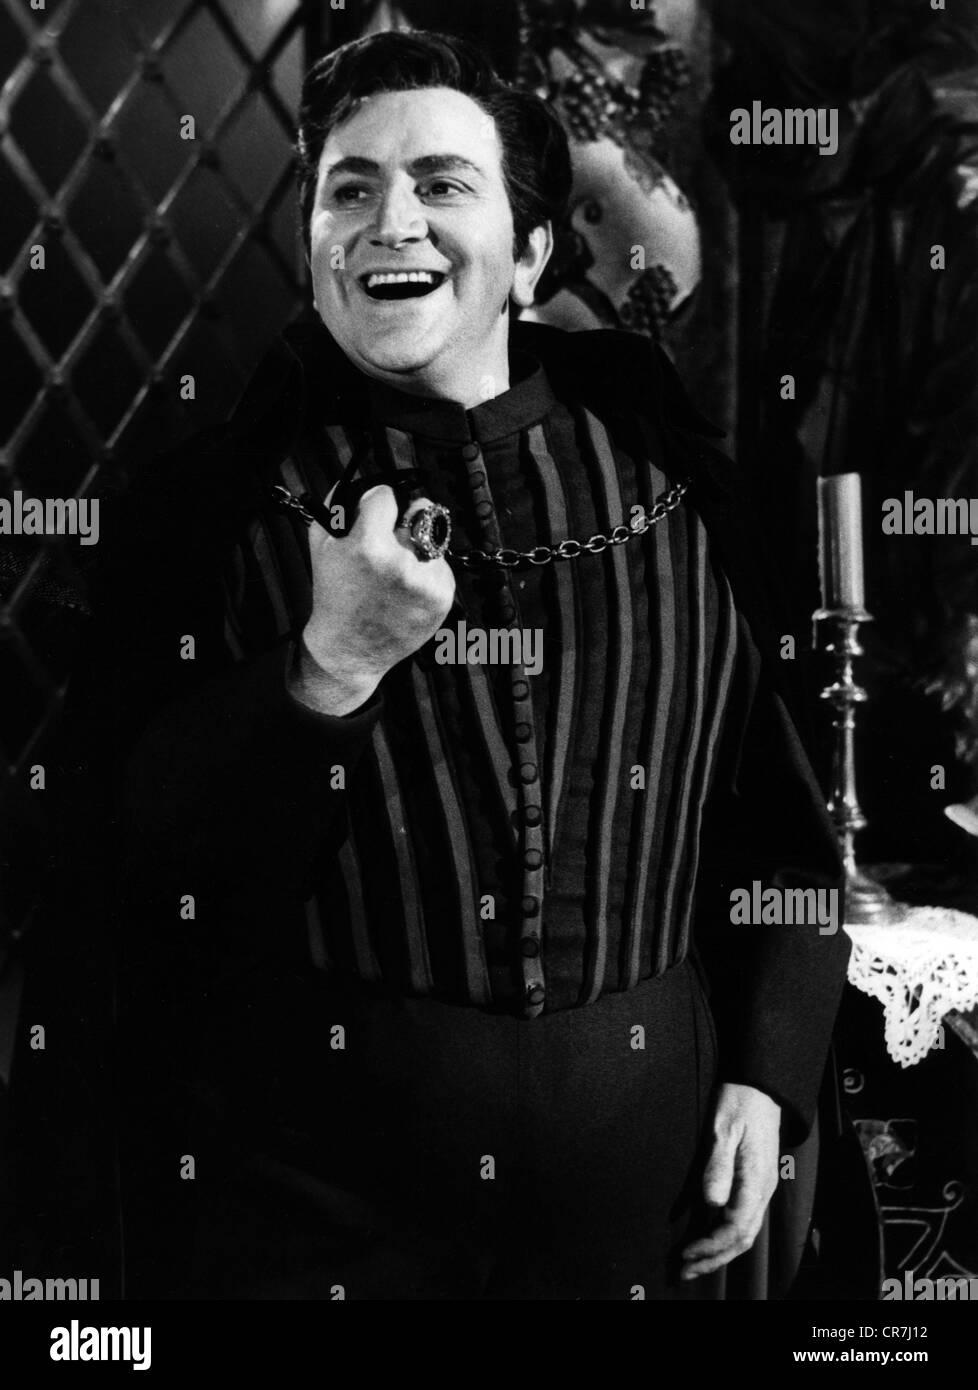 Metternich, Josef, 2.6.199 - 21.2.2005, deutscher Opernsänger (Bariton),  singt eine Szene aus der Oper "Tosca" von Giacomo Puccini, Aufführung in  der TV-Show "Begegnung mit einem Saenger", 1960er Jahre Stockfotografie -  Alamy